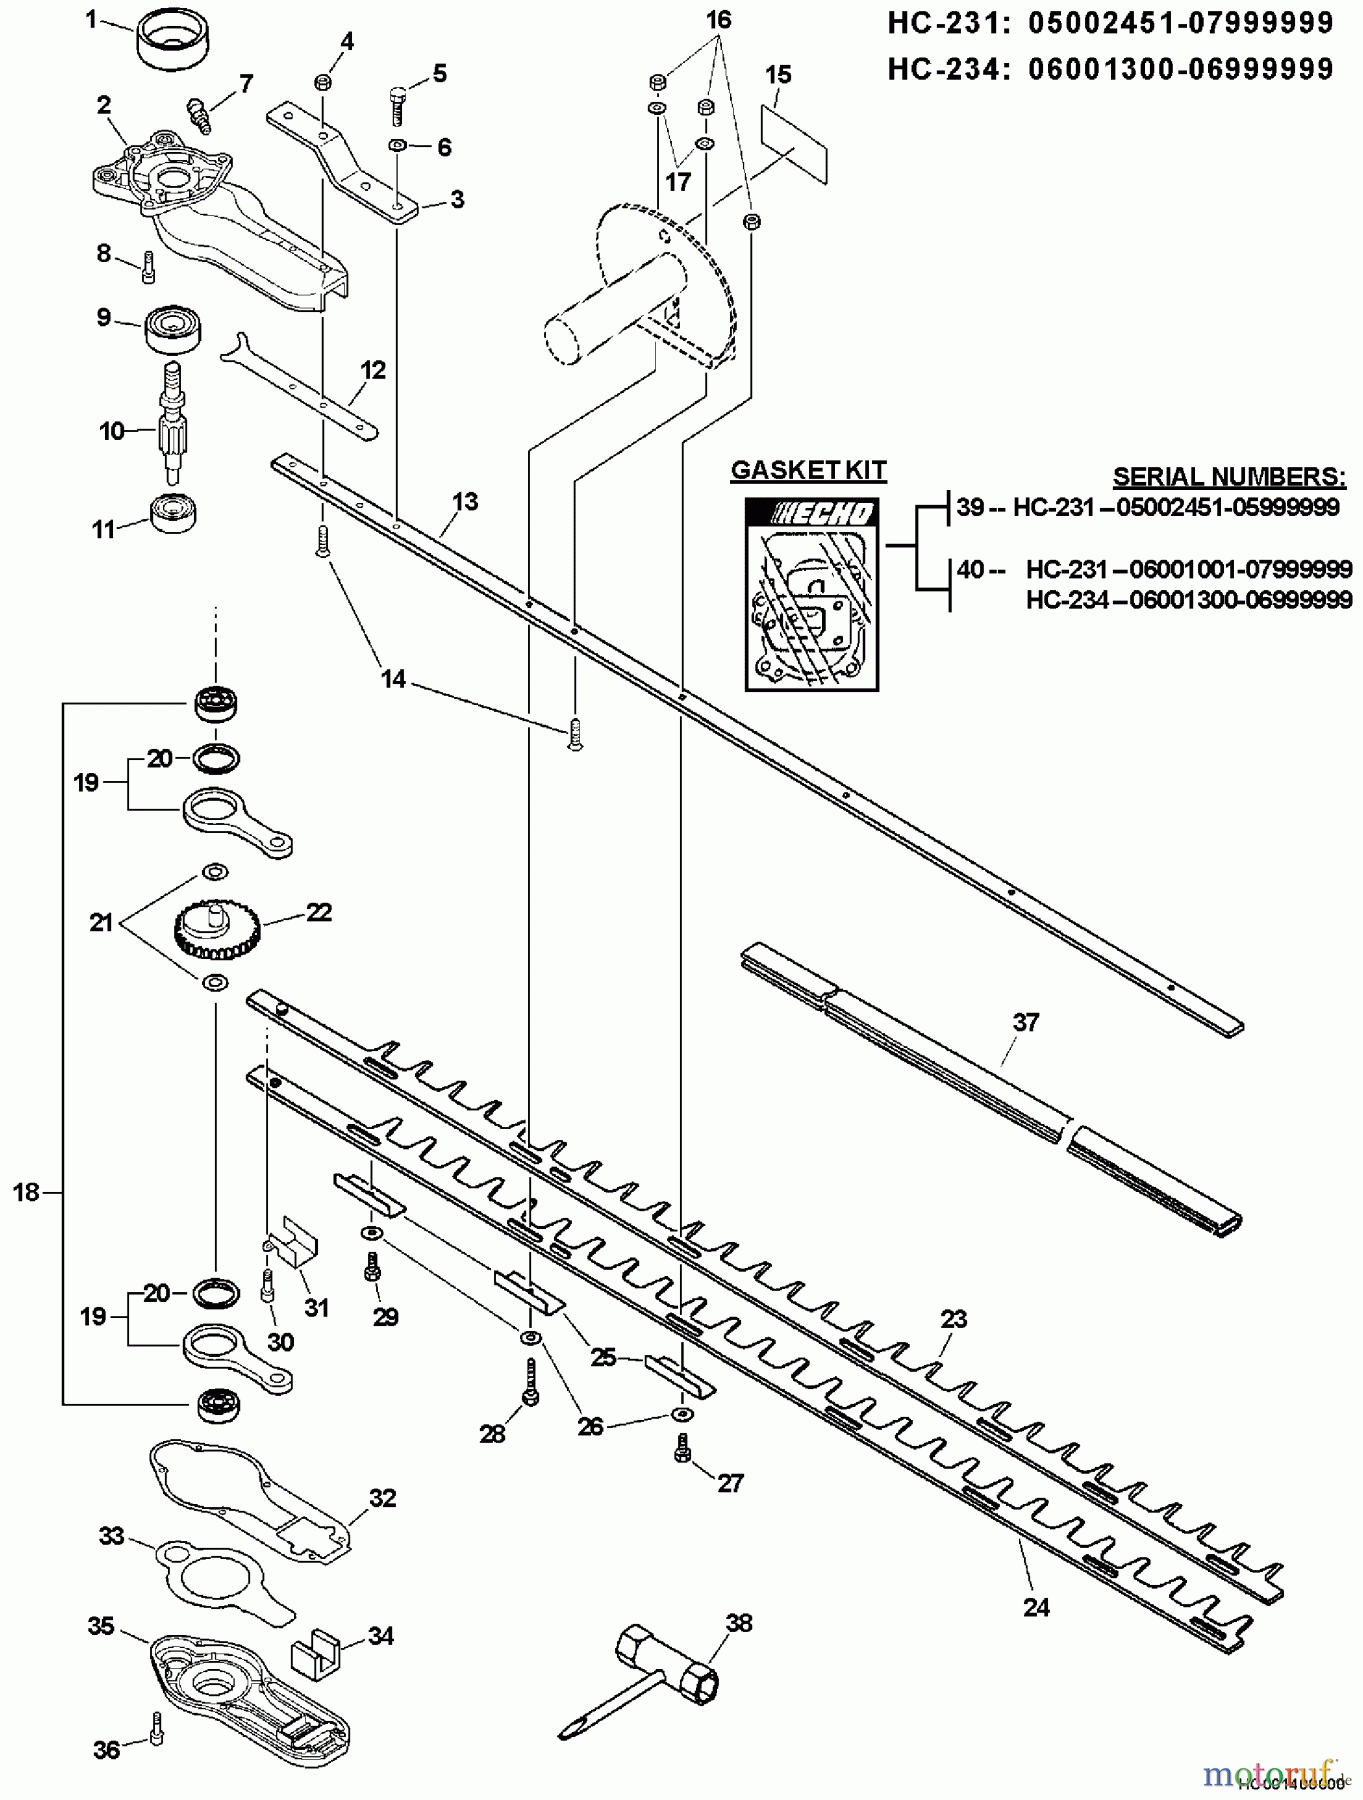  Echo Heckenscheren HC-231 - Echo Hedge Trimmer, S/N: 05001001 - 05999999 Blades, Gear Case, Tools  S/N: 05002451 - 05999999